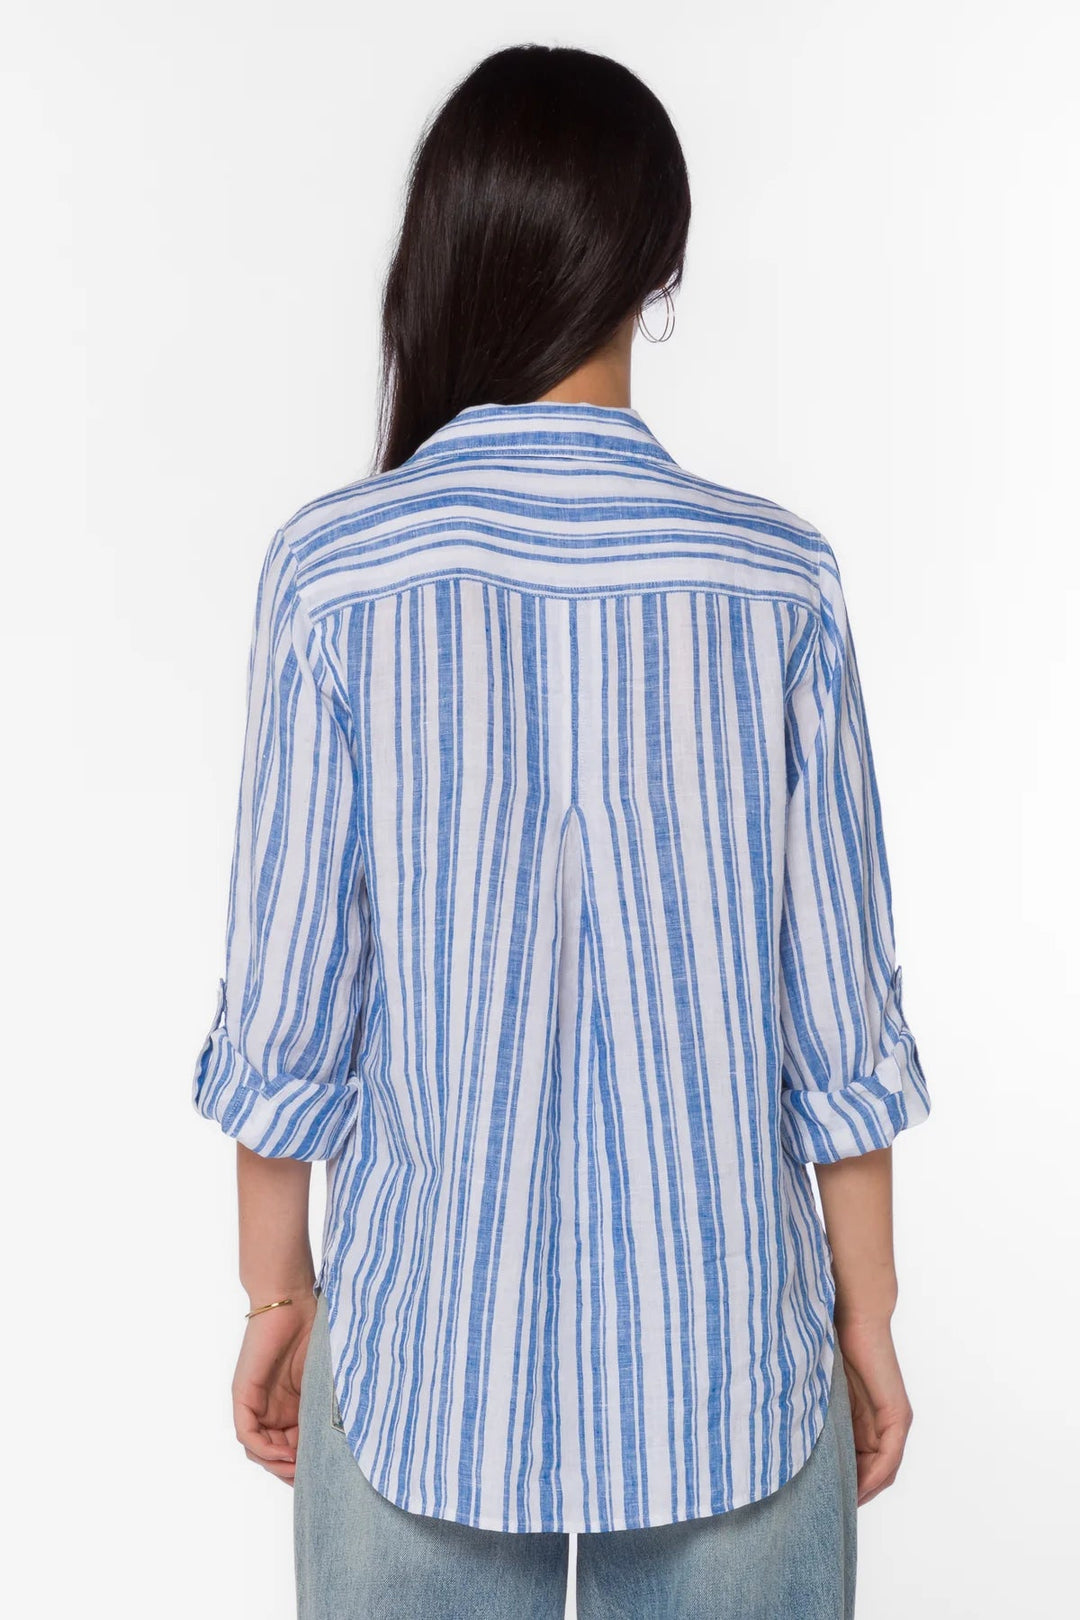 Elisa Blue Stripe Shirt - Lush Lemon - Women's Clothing - Velvet Hearts - 20619206191